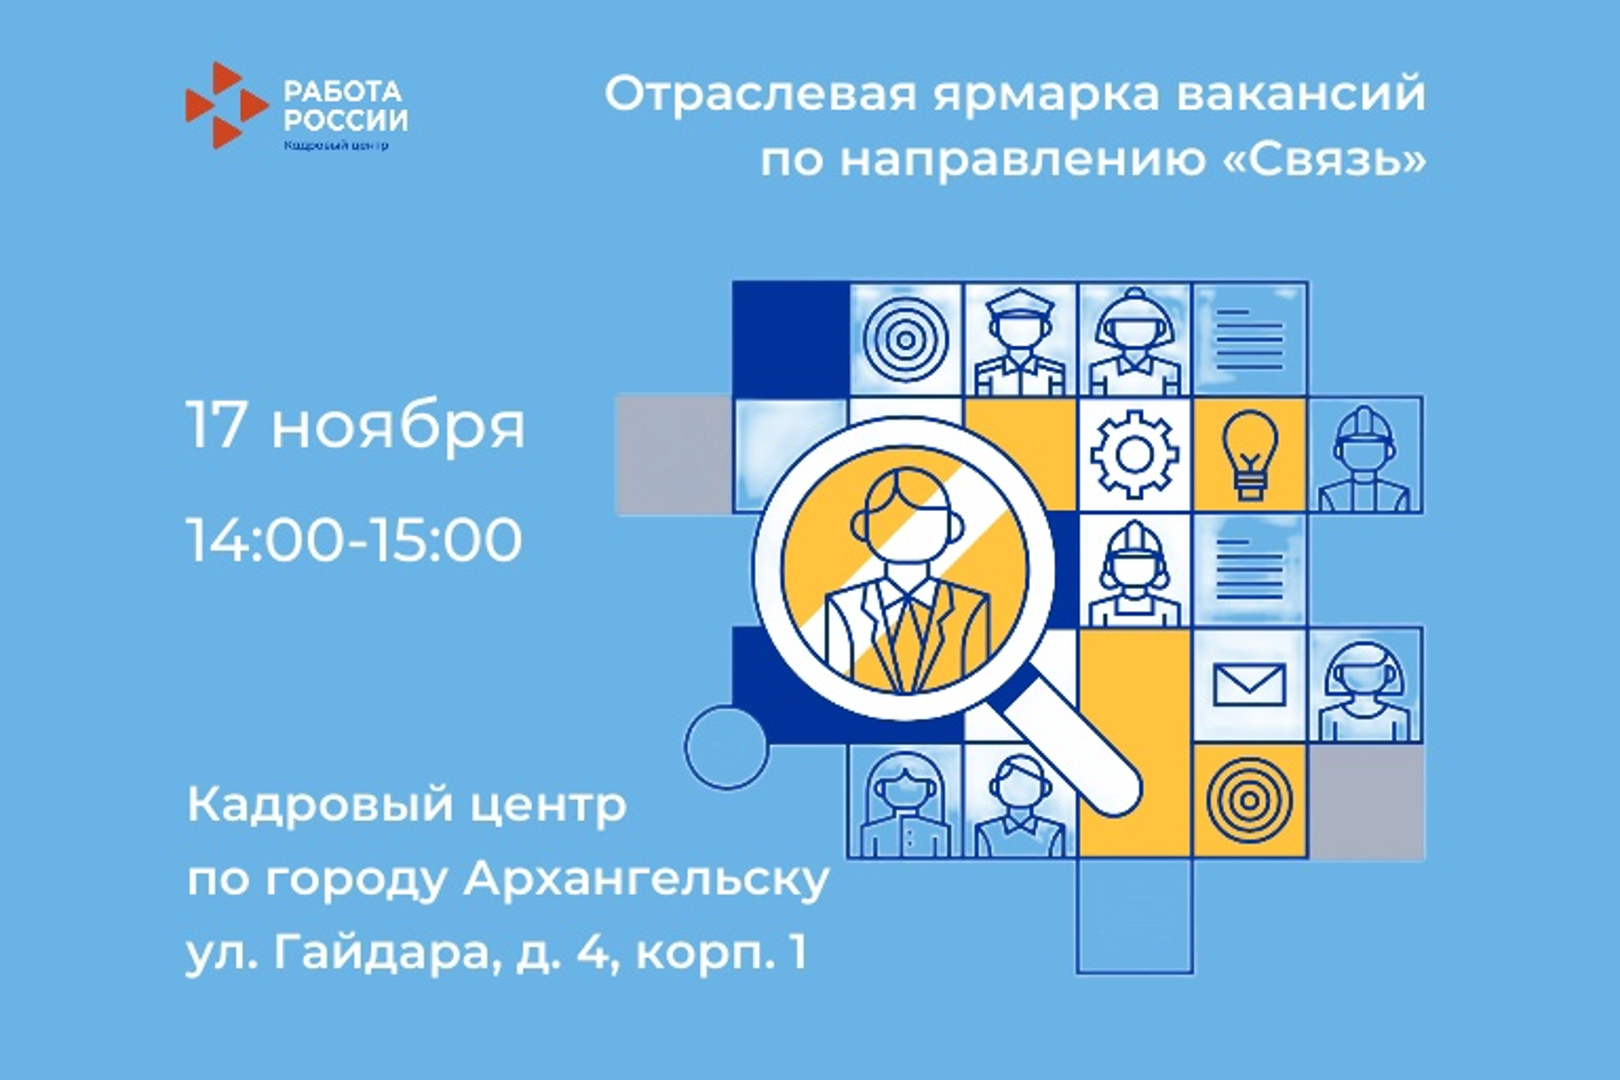 Ярмарка вакансий по направлению «Связь» пройдет в Архангельске 17 ноября